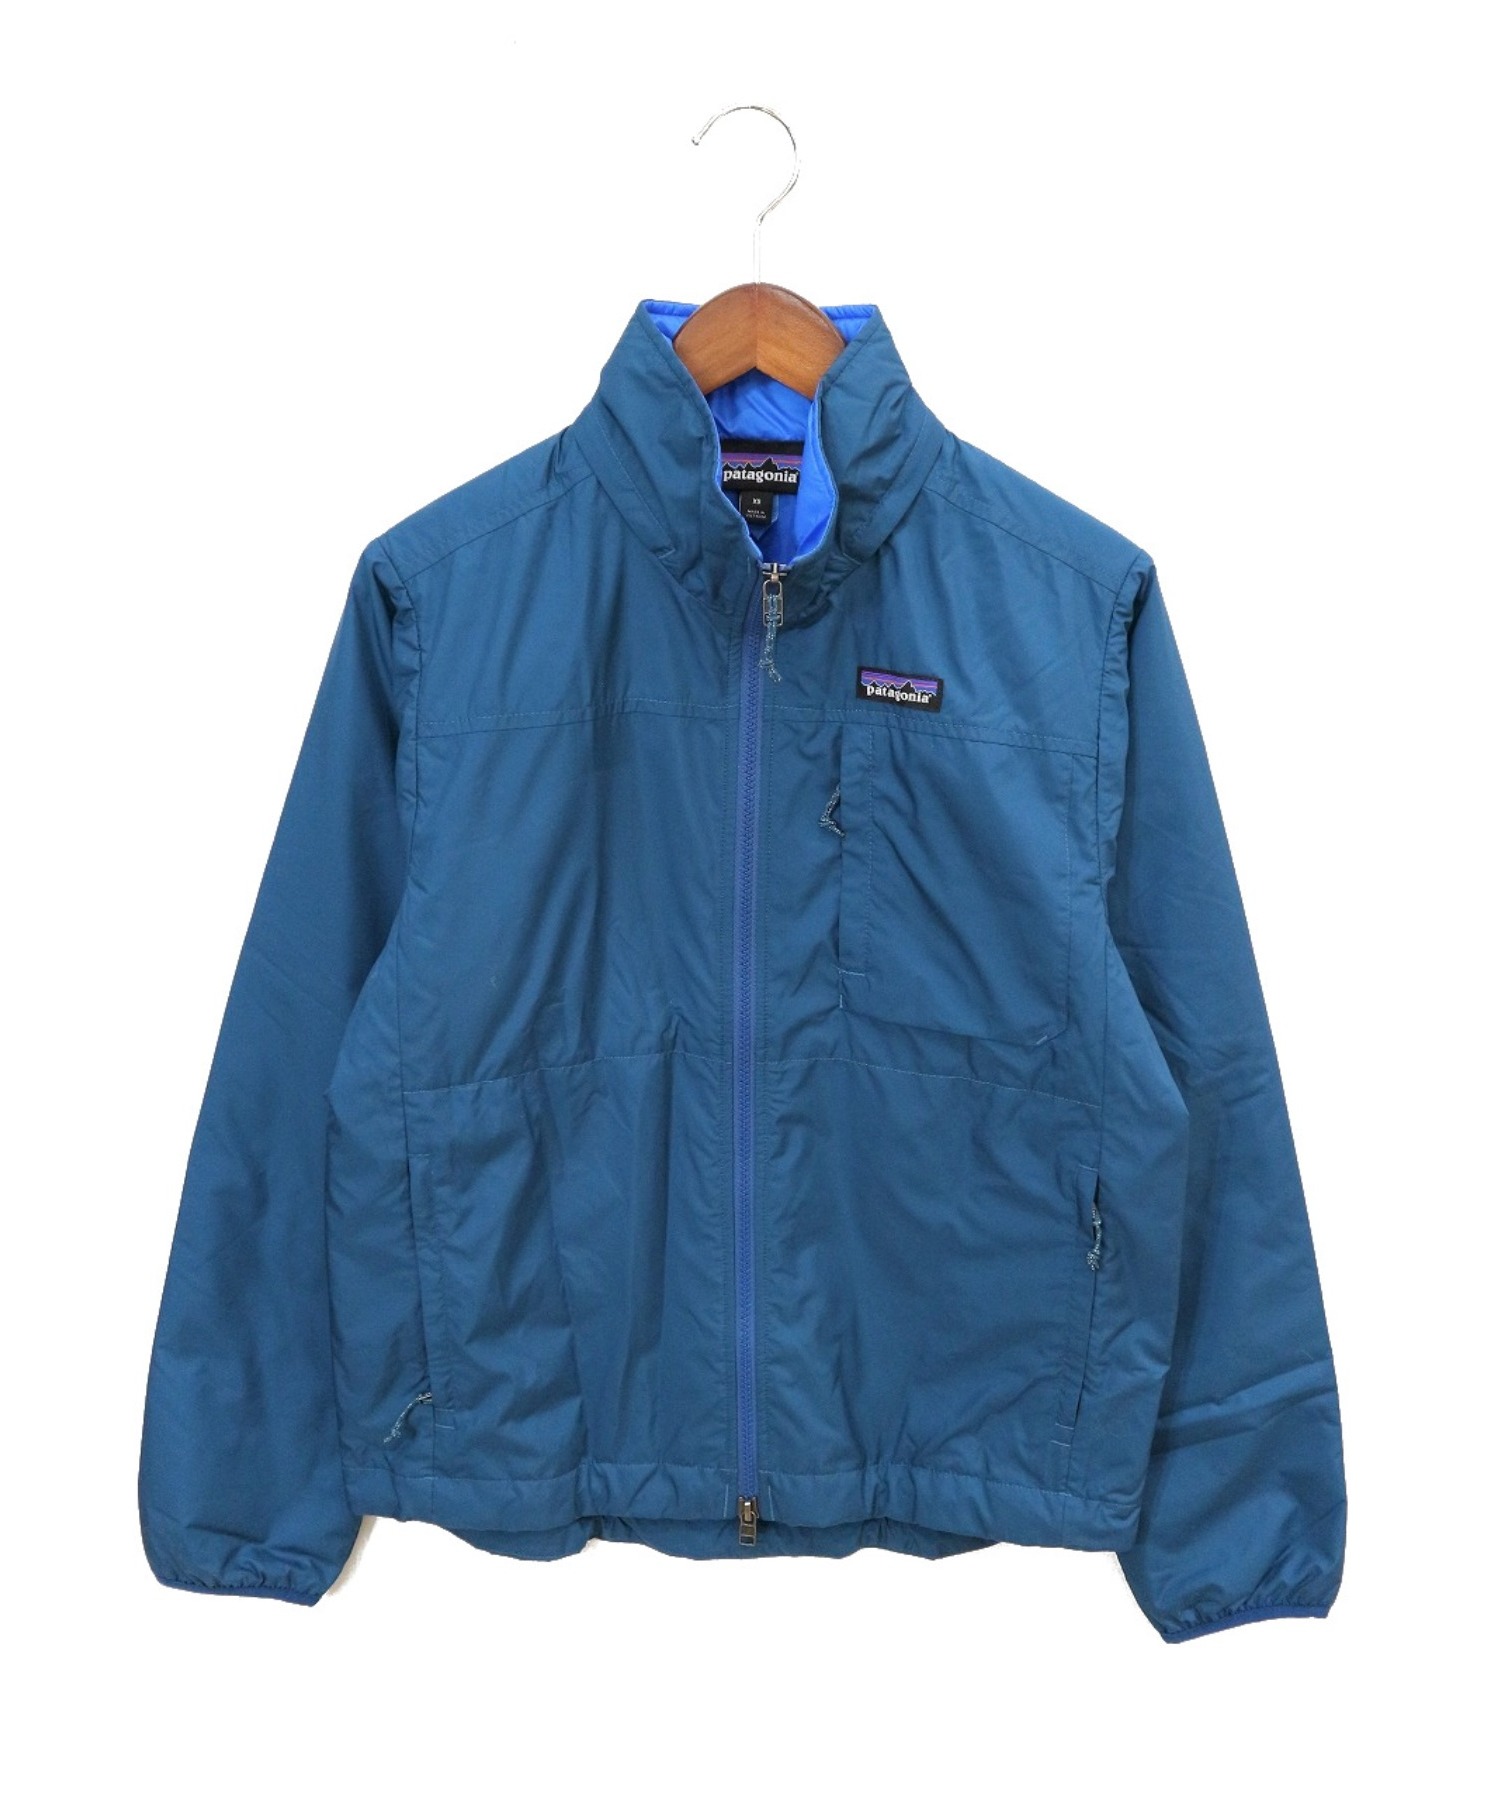 patagonia (パタゴニア) ライトウエイトクランクセットジャケット ブルー サイズ:XS